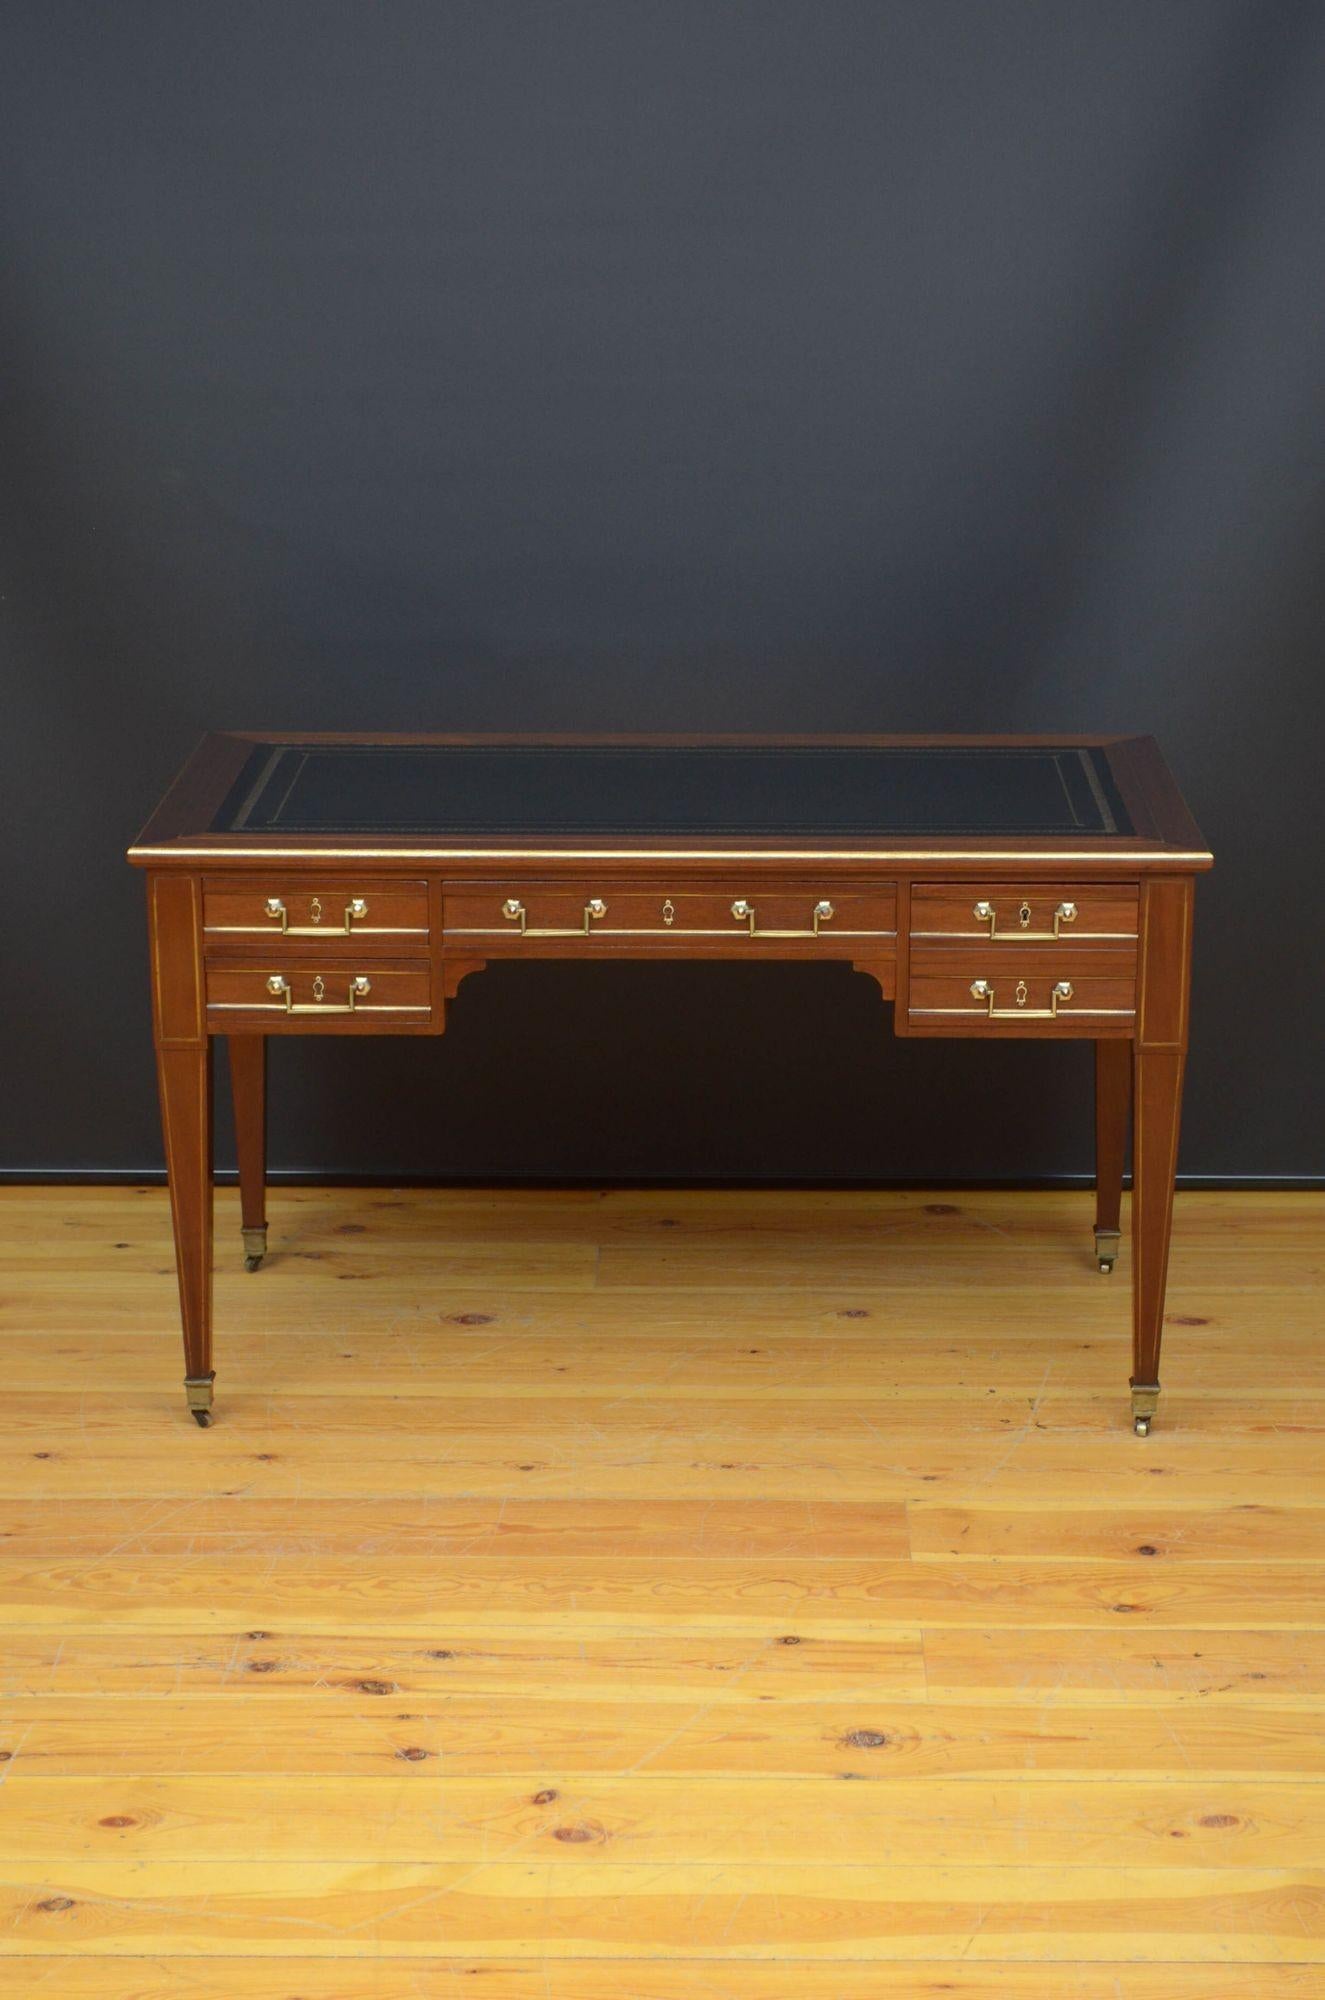 Sn5272  Feine Qualität 19. Jahrhundert Mahagoni-Schreibtisch von Waren Proportionen, mit neuen bearbeitetes schwarzes Leder auf der Oberseite von zwei Schiebern über lange Mitte Schublade flankiert von zwei Schubladen auf der linken Seite und eine